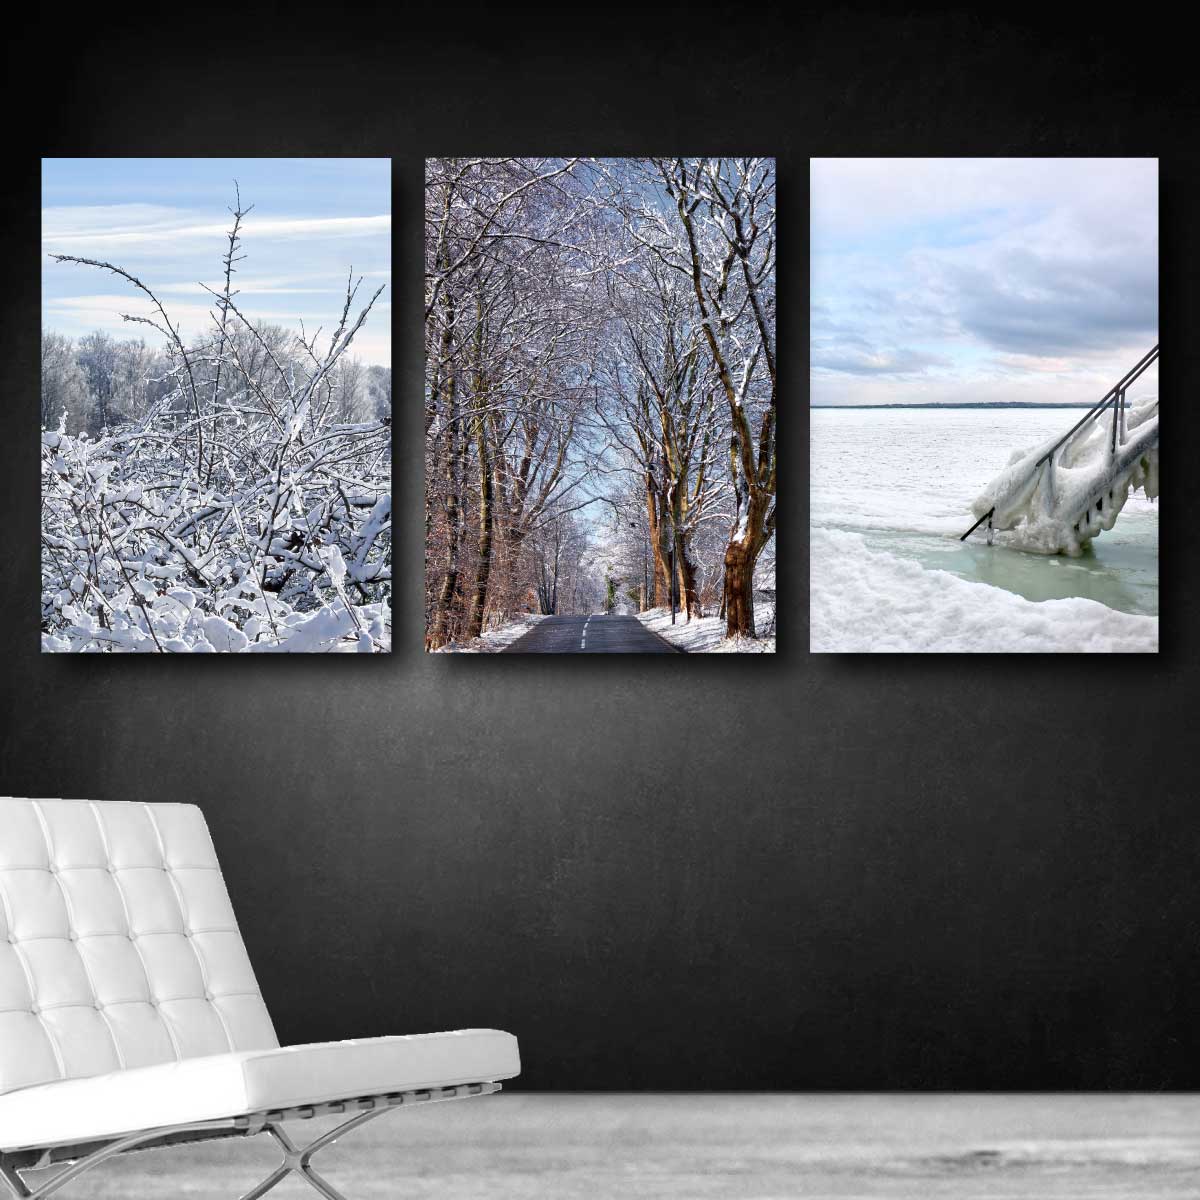 billeder til væggen med vinterbilleder fra Danmark